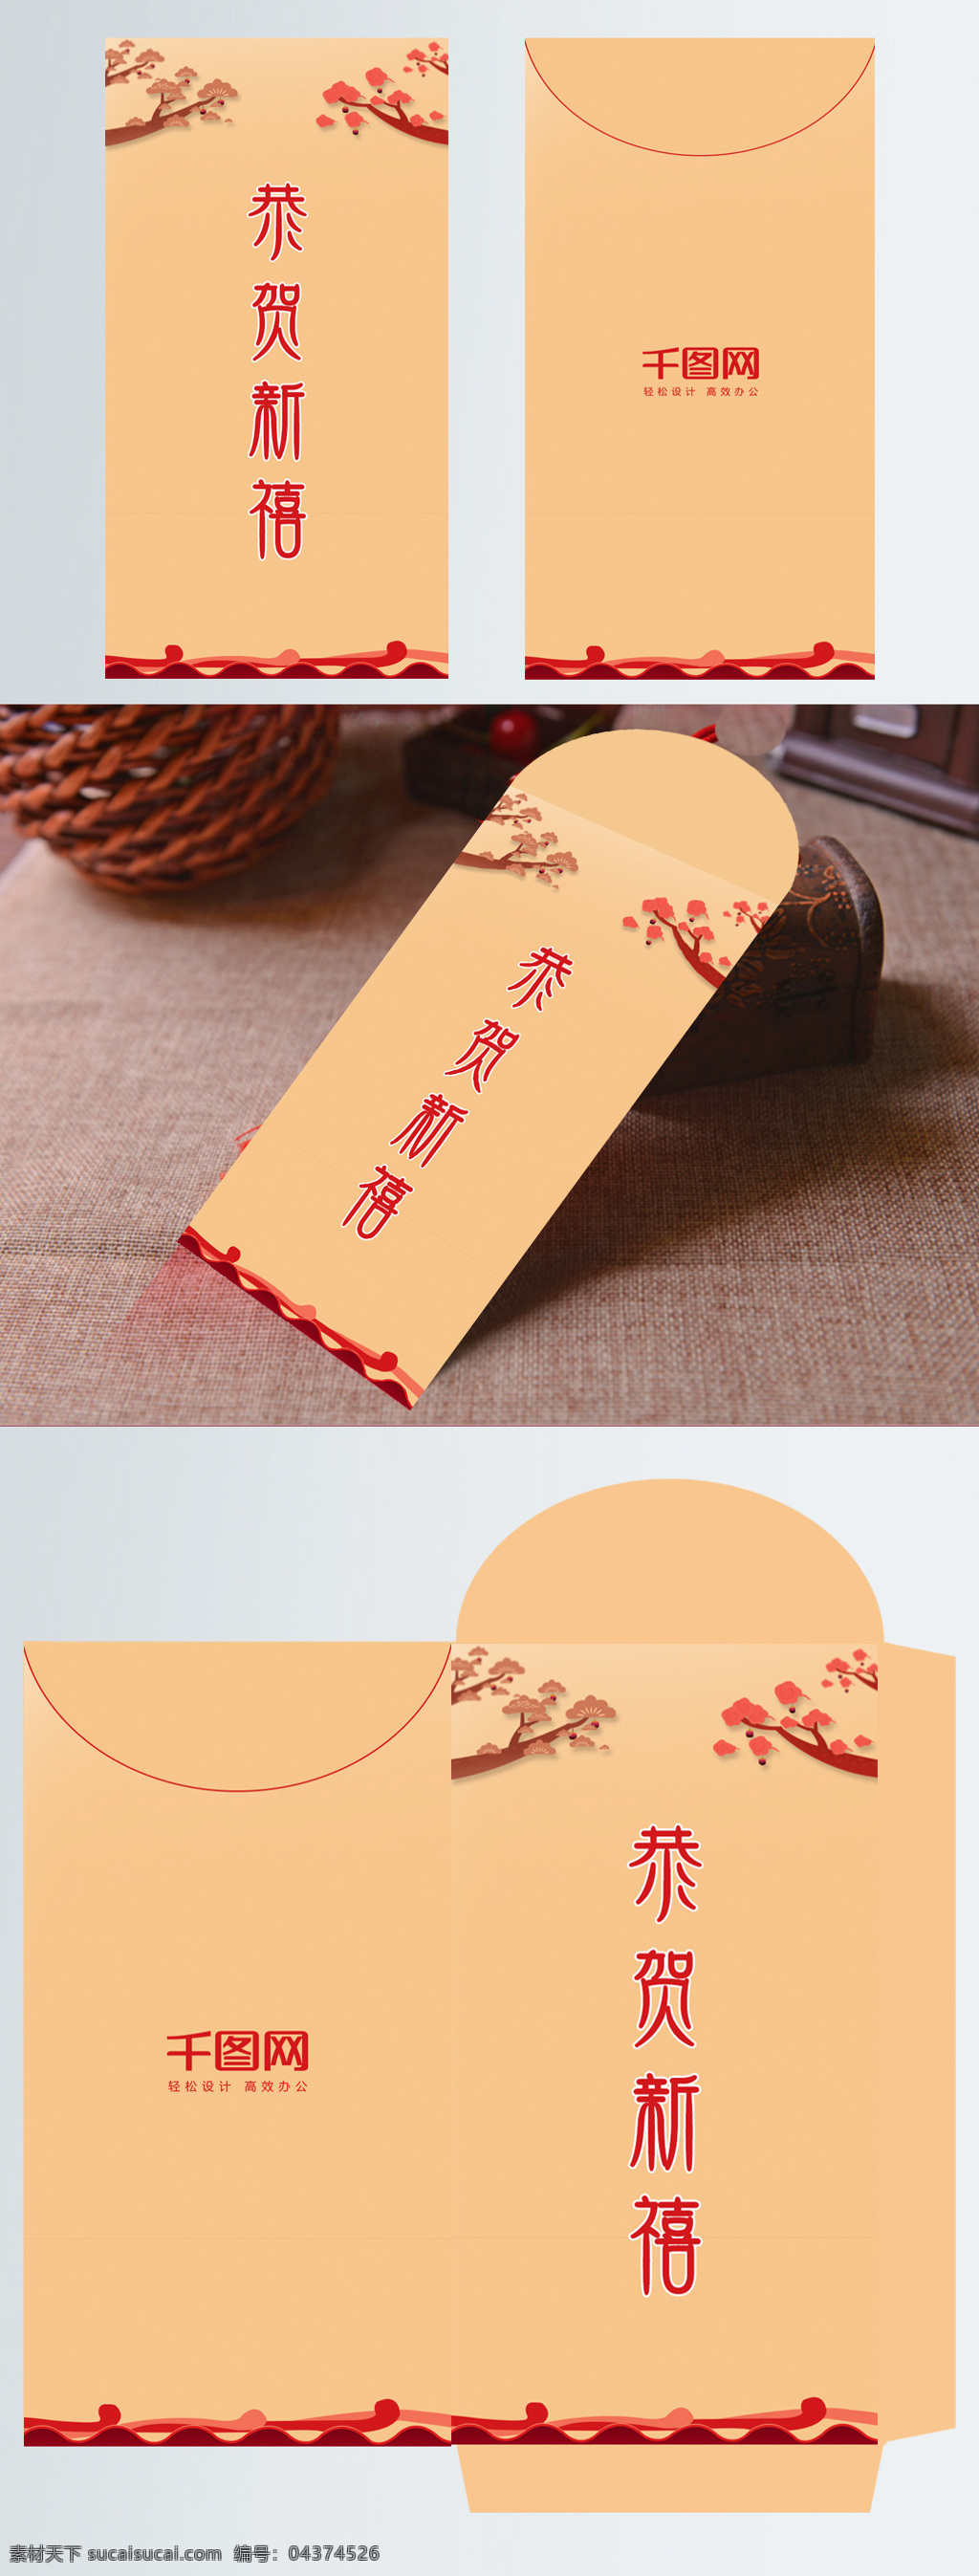 简约 中国 风 新年 红包 模板 大气 恭贺新禧 红包模板 红包设计 新年红包 中国风